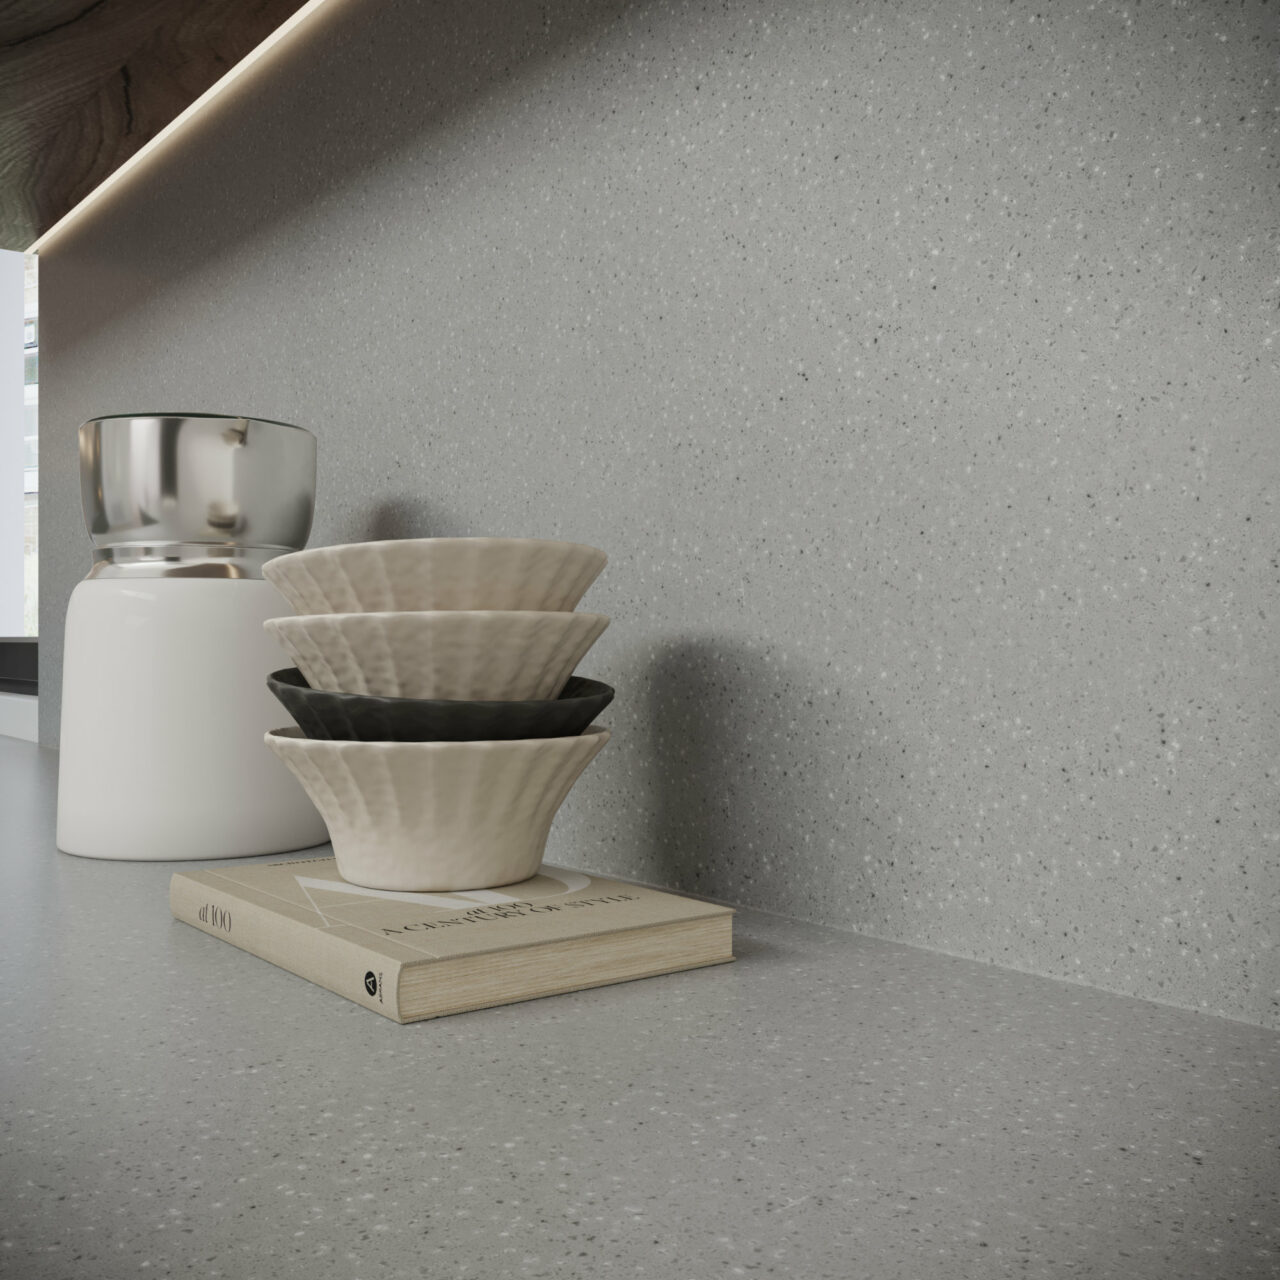 Kitchen with Durasein concrete effect worktop and splashback in Concrete.